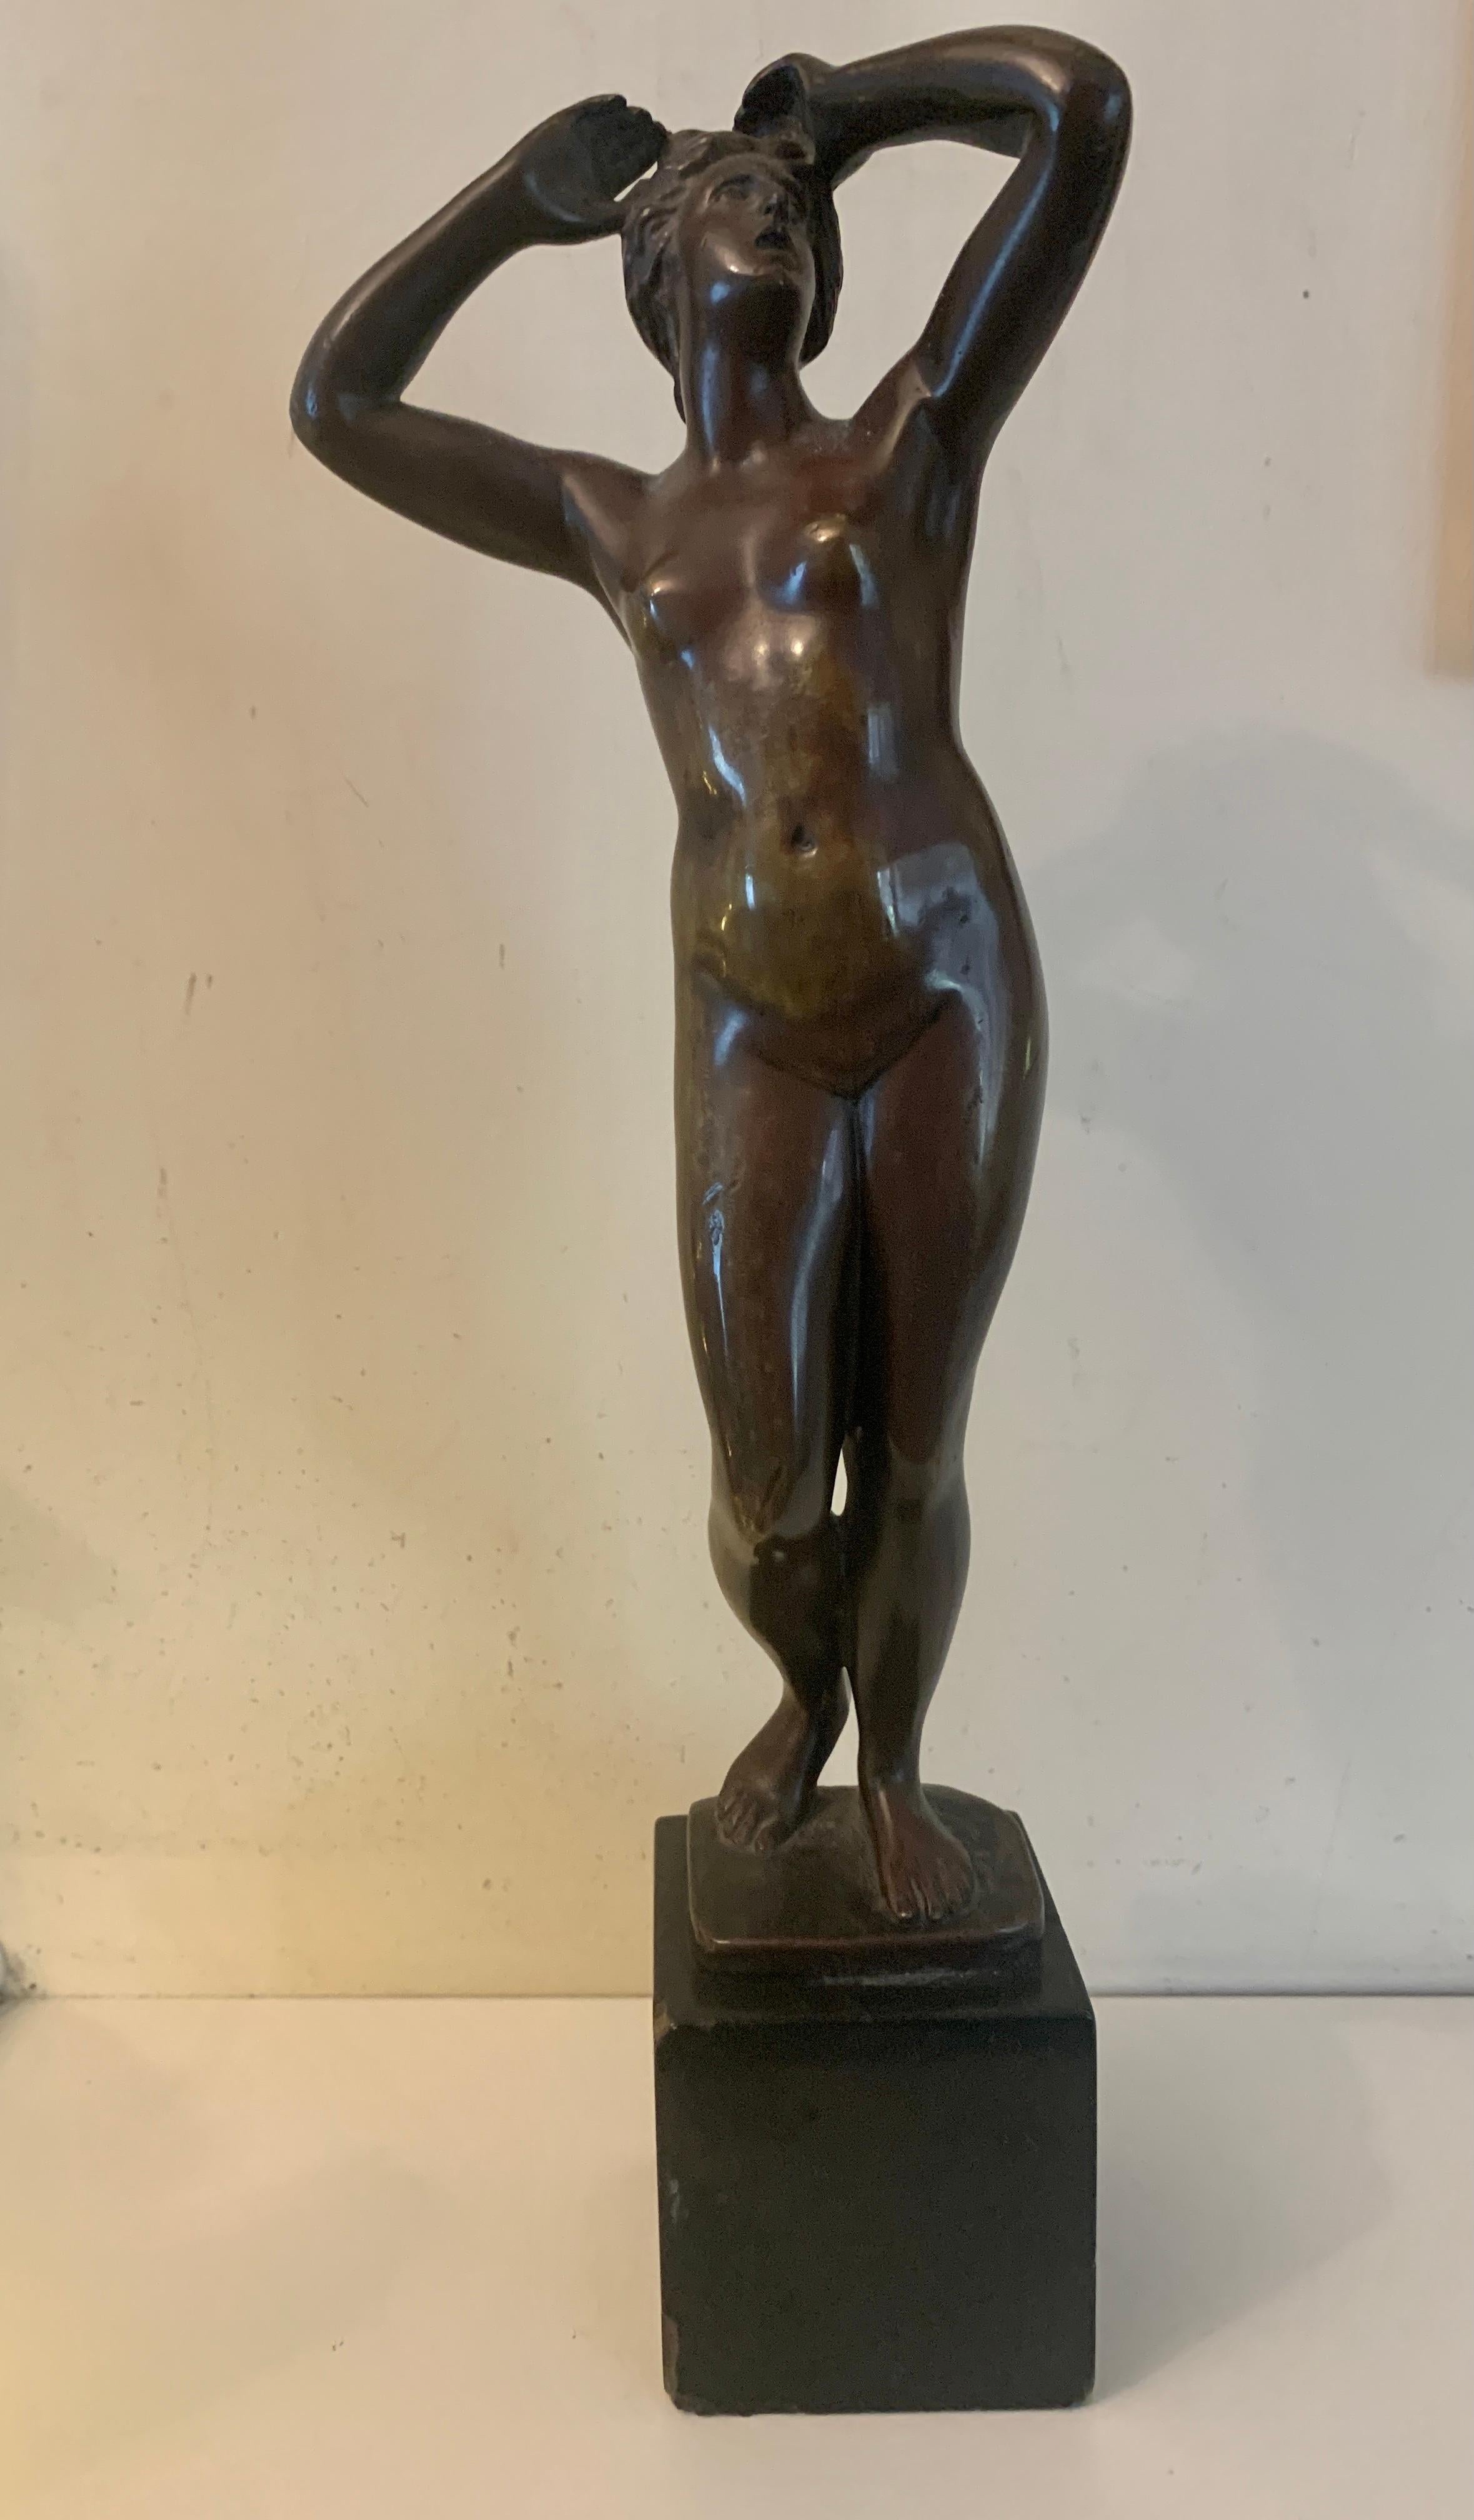 Französische Bronze aus dem 19. Jahrhundert, die eine nackte Frau im Stehen zeigt.